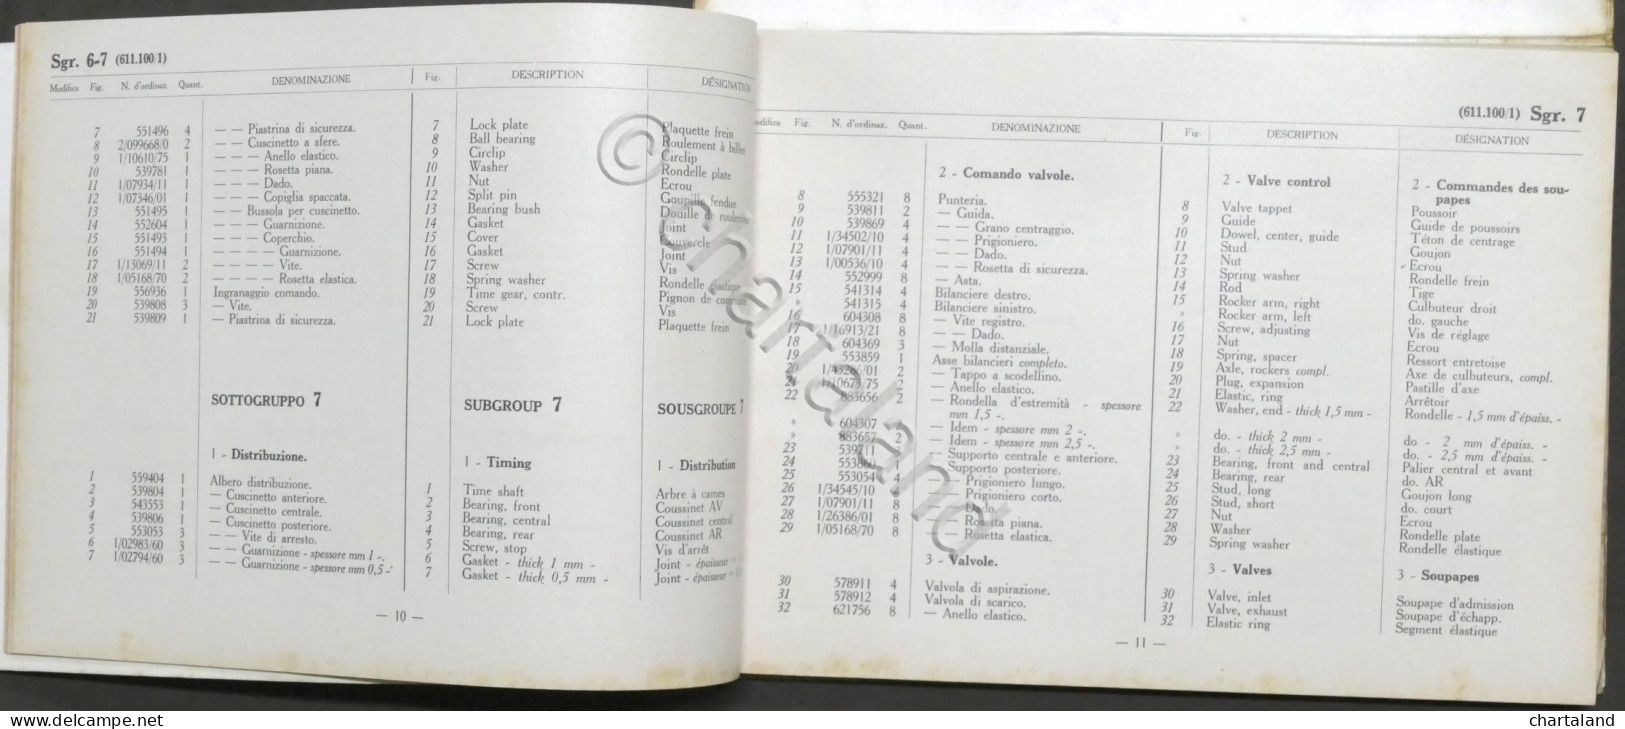 Fiat Trattori - Catalogo Parti Di Ricambio - Trattore 80 R - 1^ Ed. 1961 - Other & Unclassified